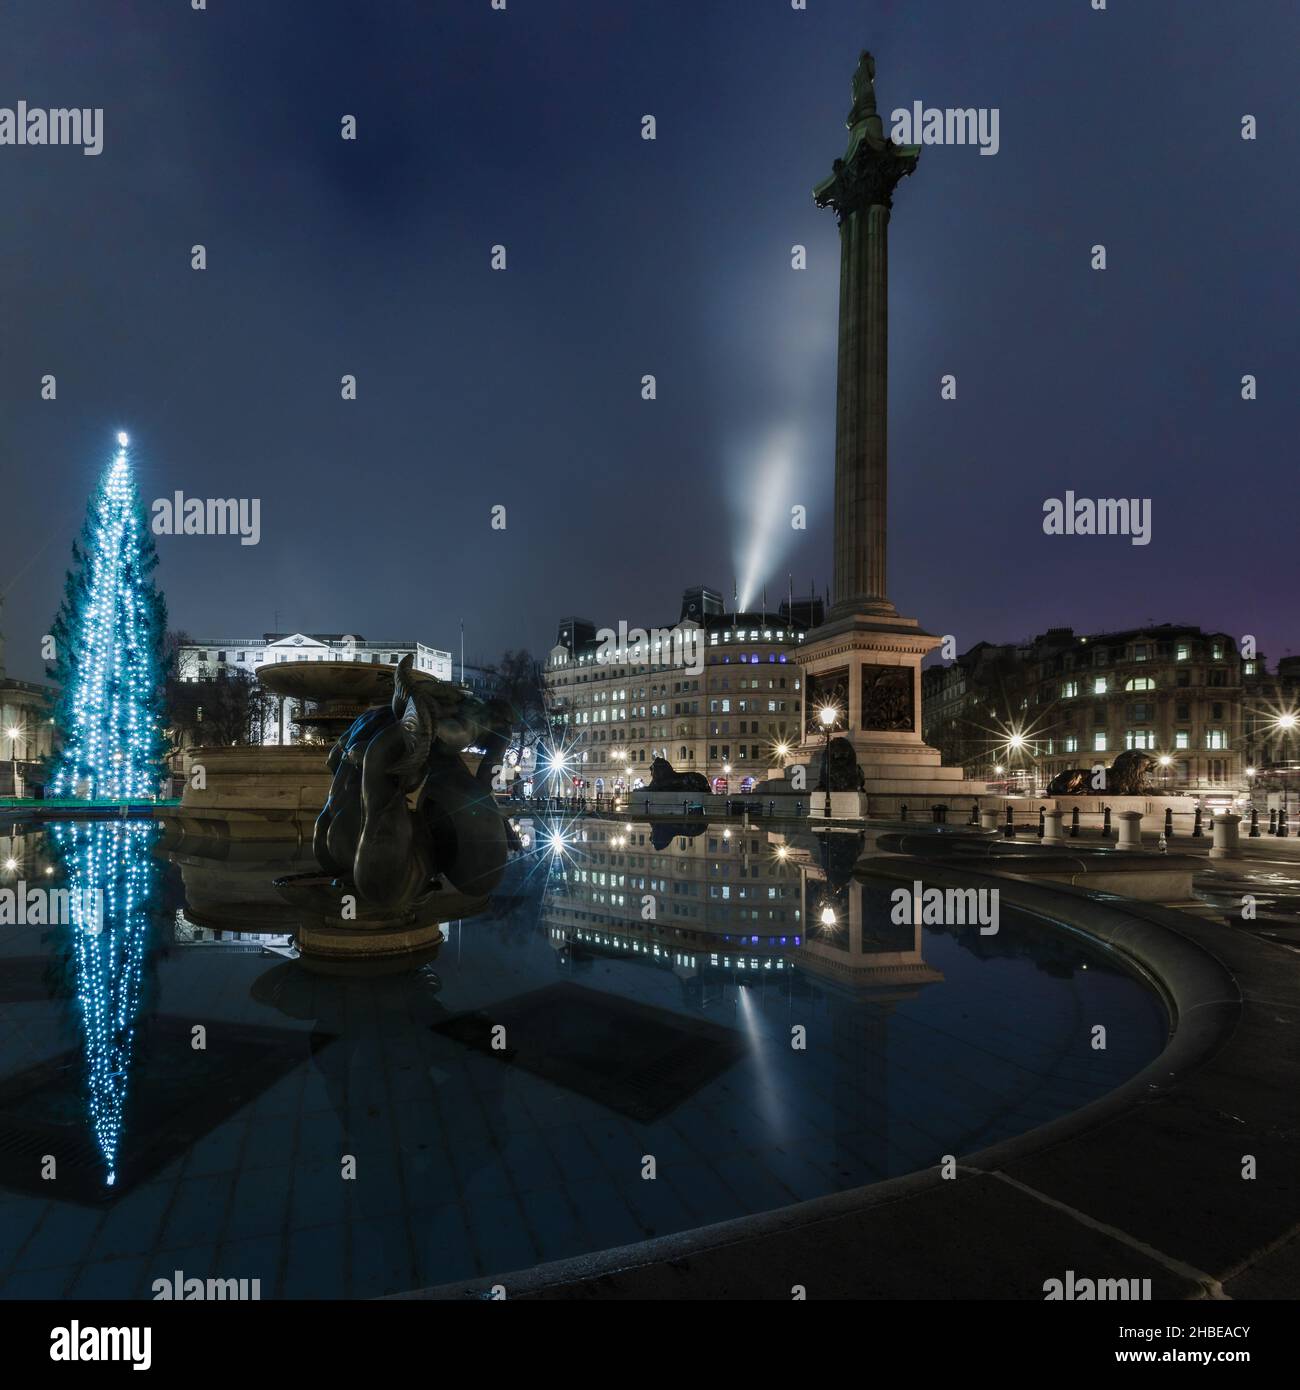 Noël à Trafalgar Square, avec le géant arbre de Noël norvégien offert au Royaume-Uni chaque année par le peuple norvégien Banque D'Images